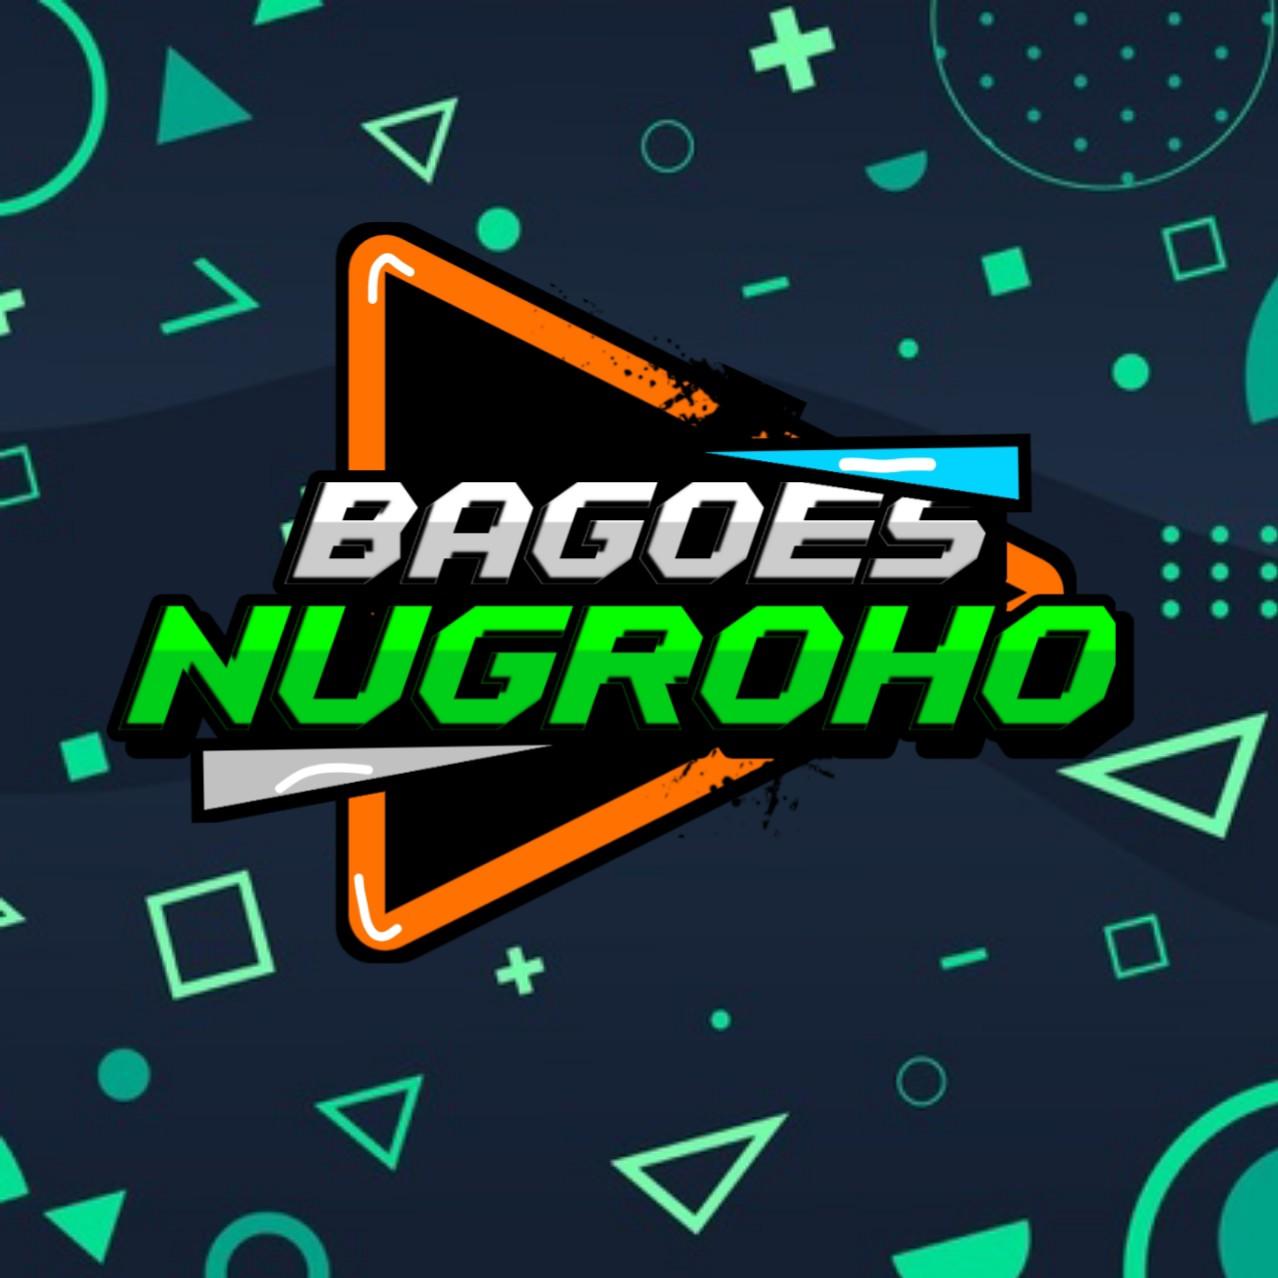 Bagoes Nugroho